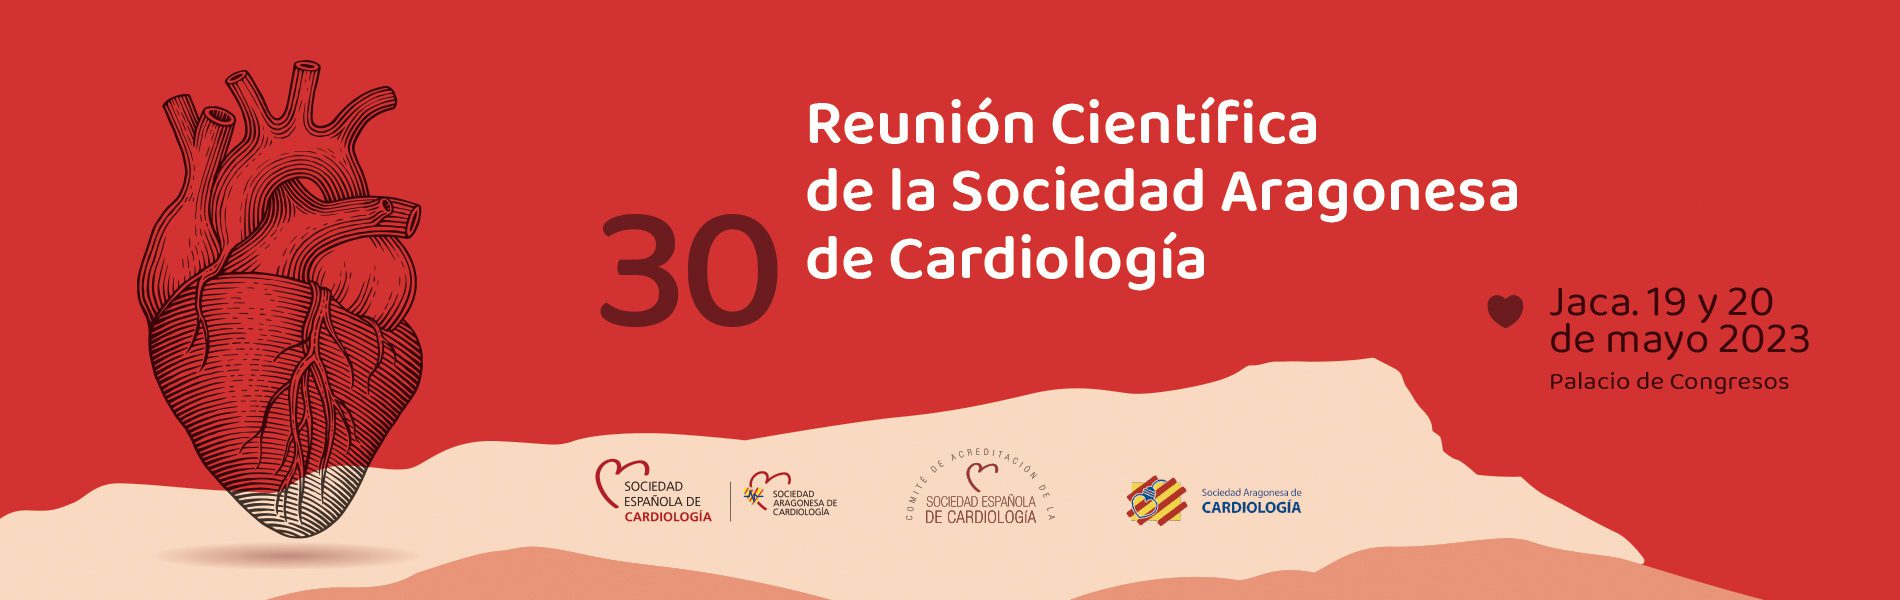 Sociedad Aragonesa de Cardiología 2023